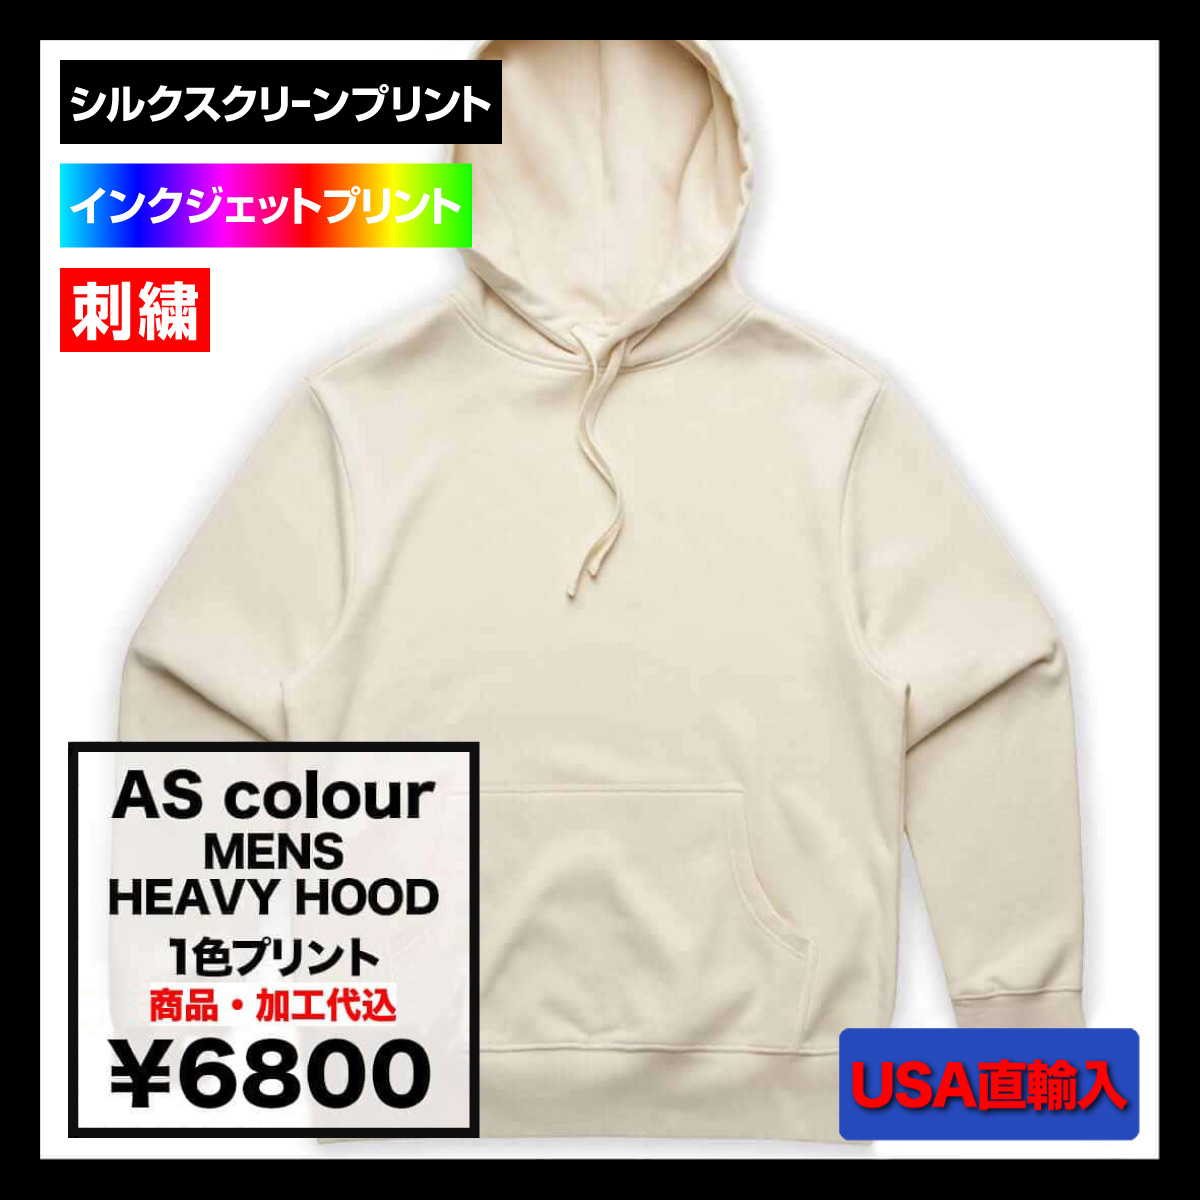 【在庫限り】AS Colour アズカラー 12.0 oz Mens Heavy Hood (品番5146US)